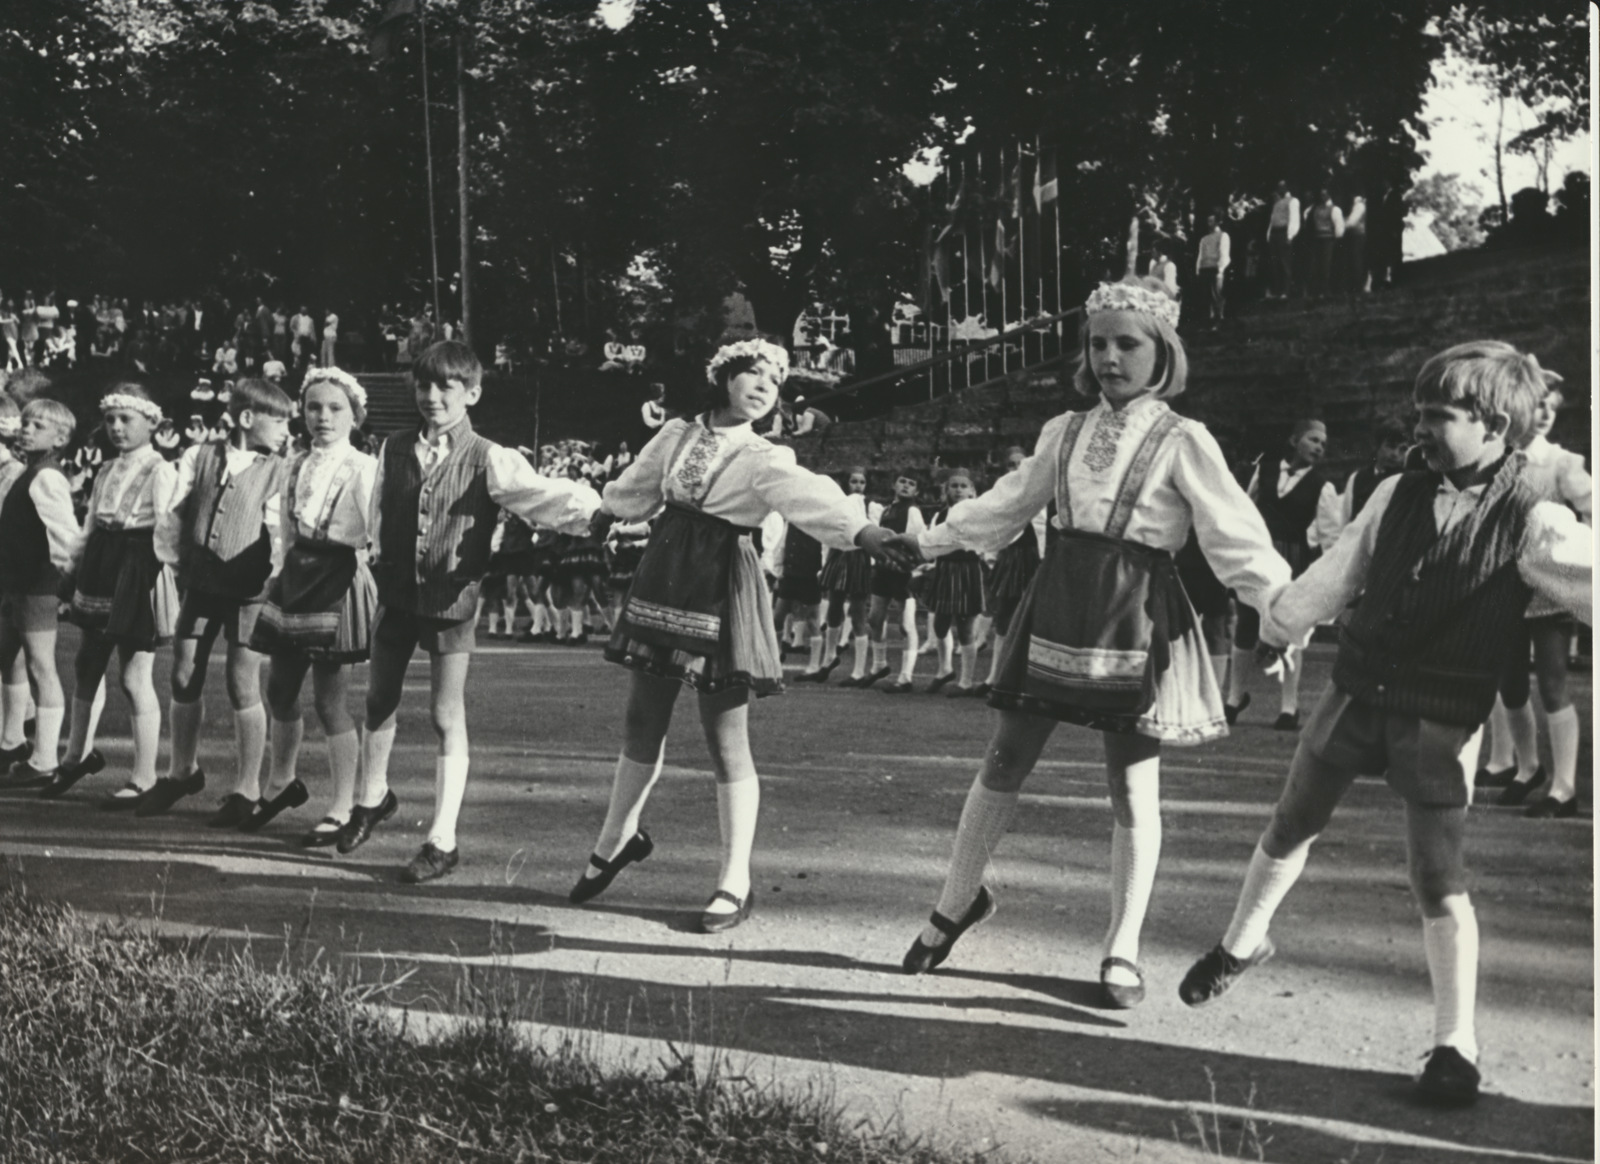 foto, Viljandi rajooni laulu- ja tantsupidu, lasterühmad, 1975, foto B. Veidebaum